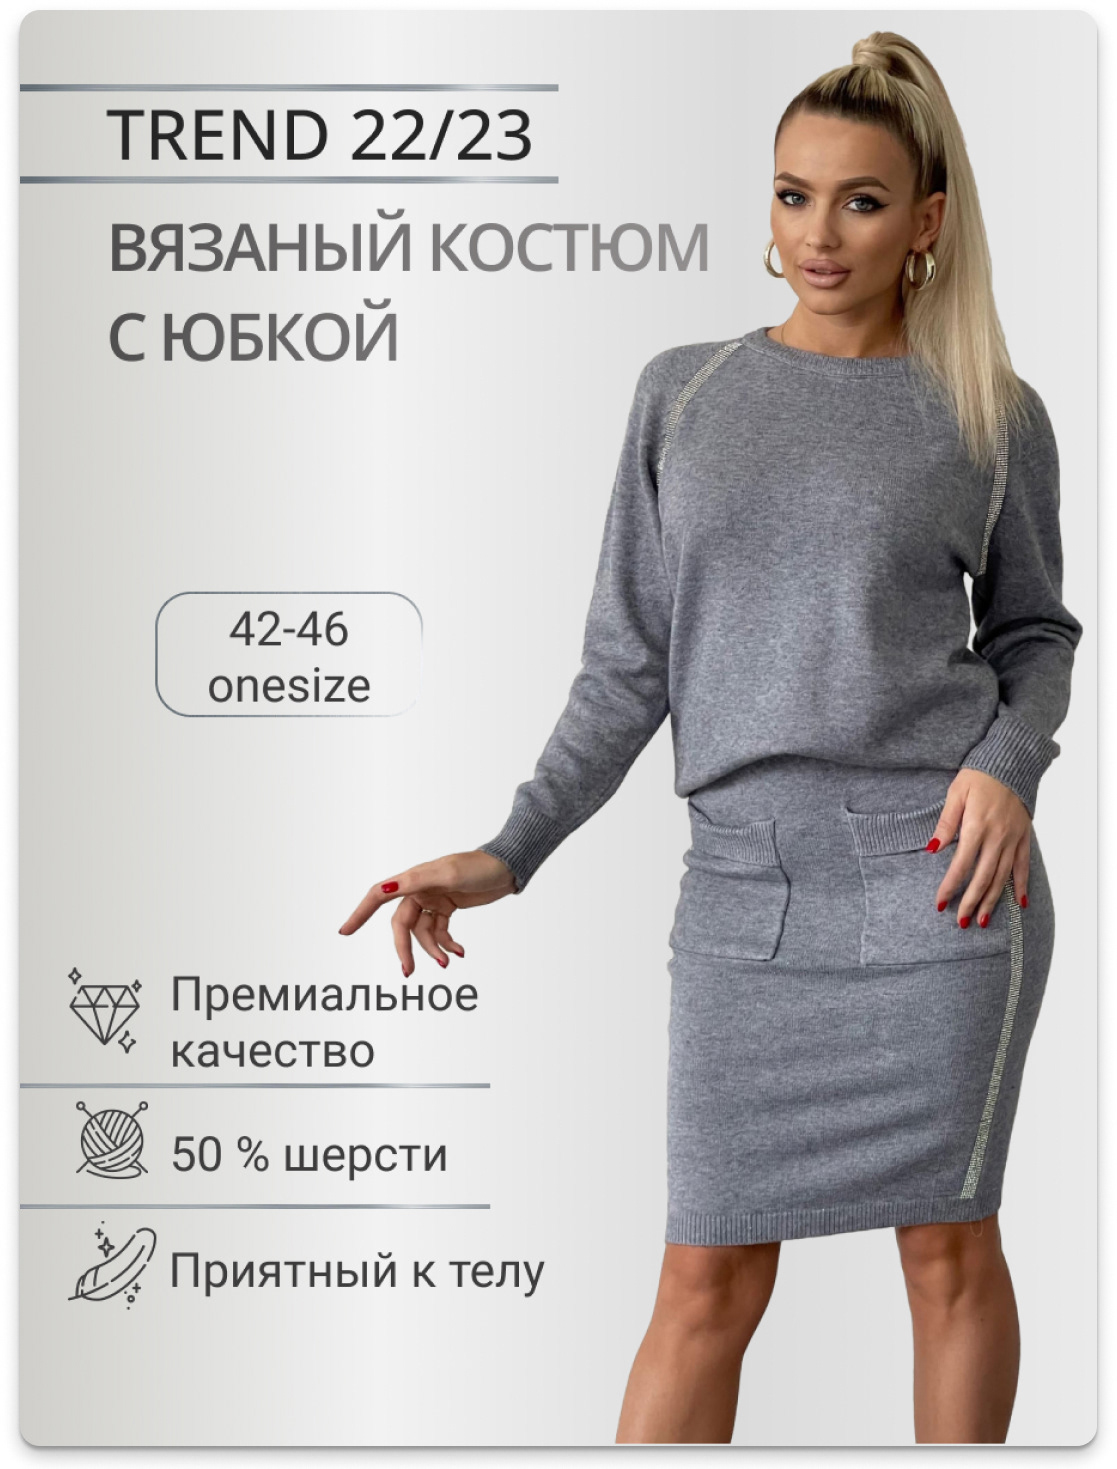 Инфографика для магазина одежды — Изображение №2 — Графика, Маркетинг на Dprofile